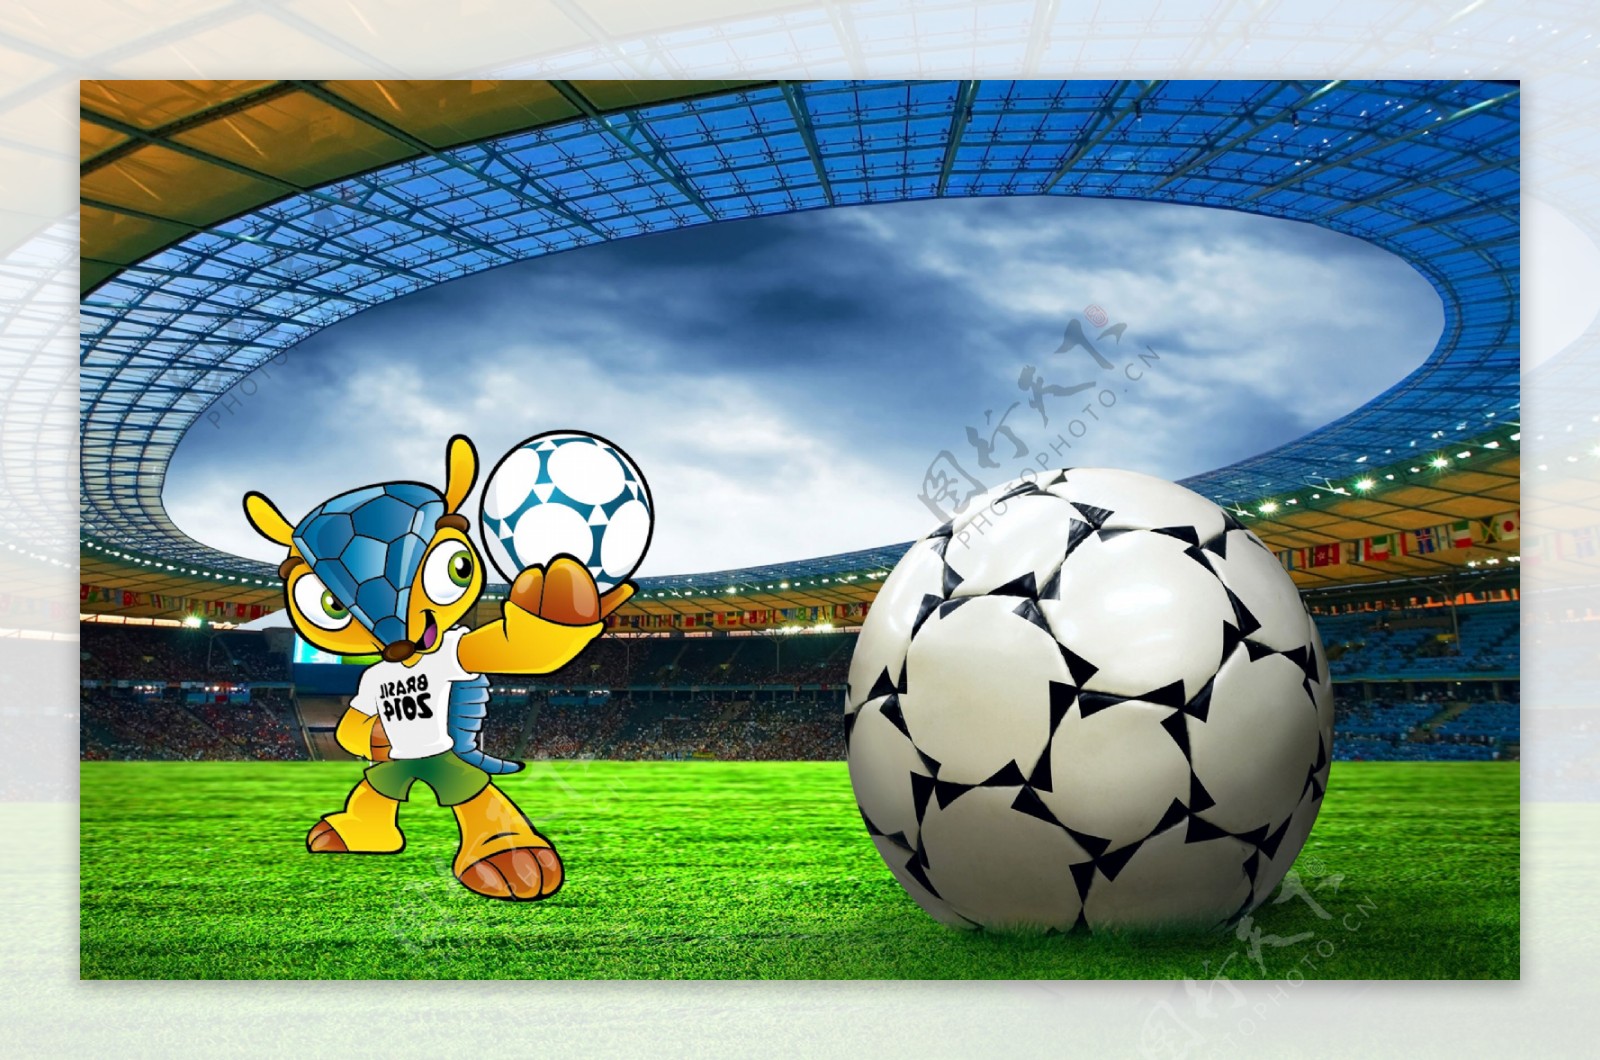 2014巴西世界杯海报图片